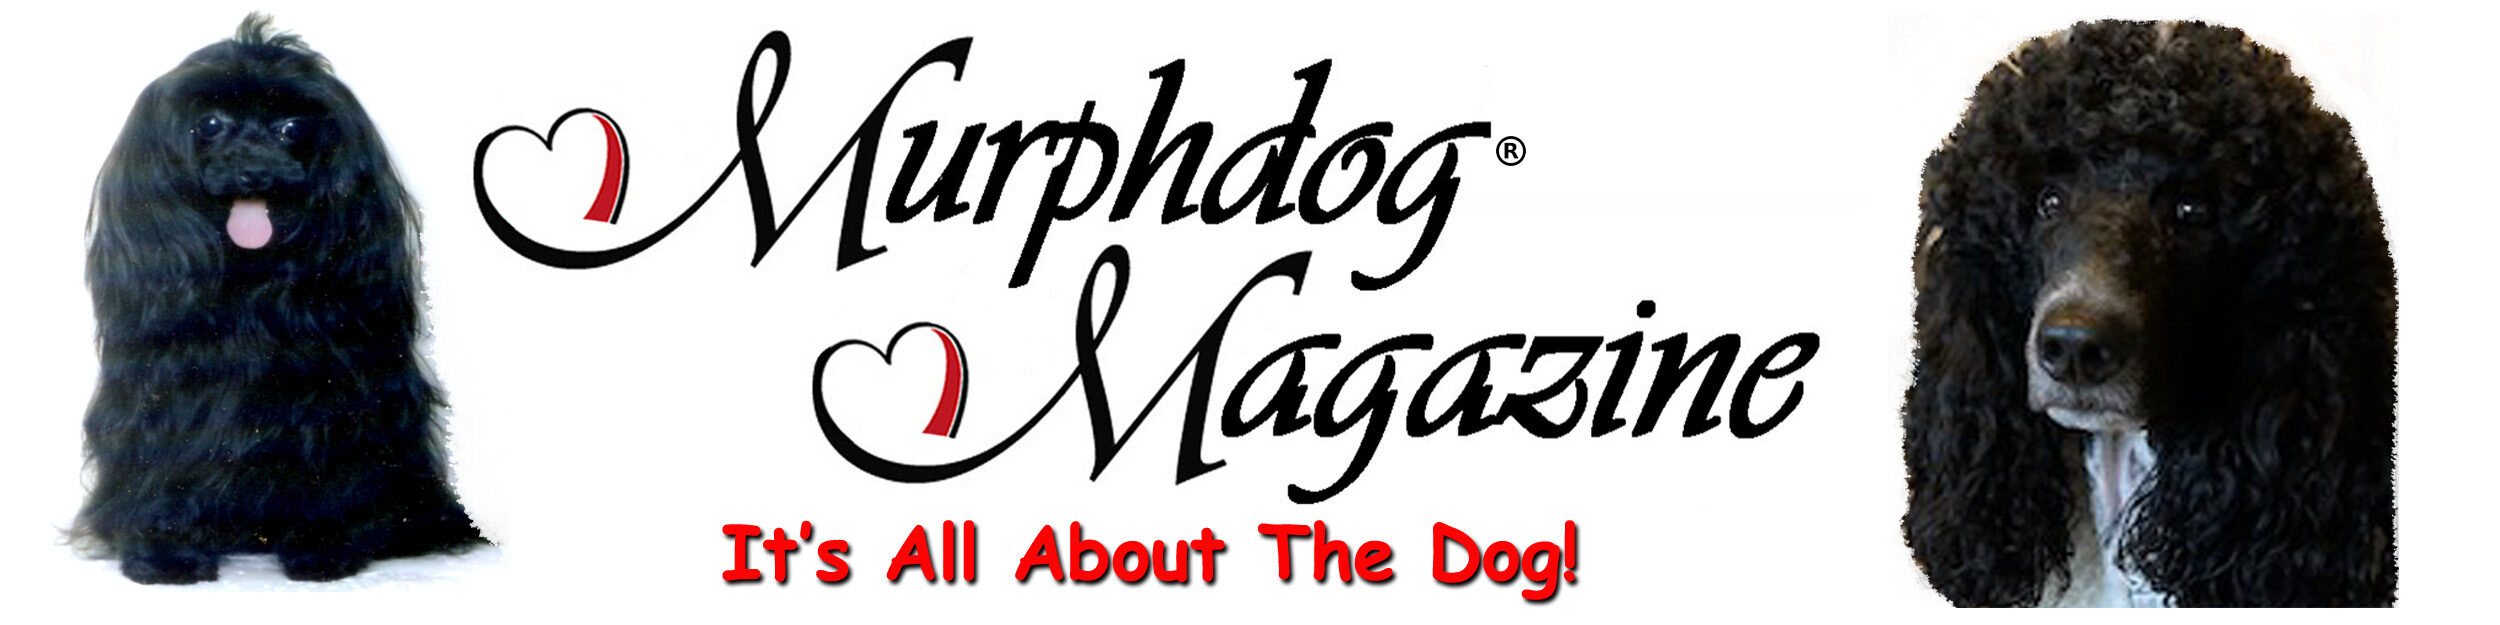 Murphdog Magazine